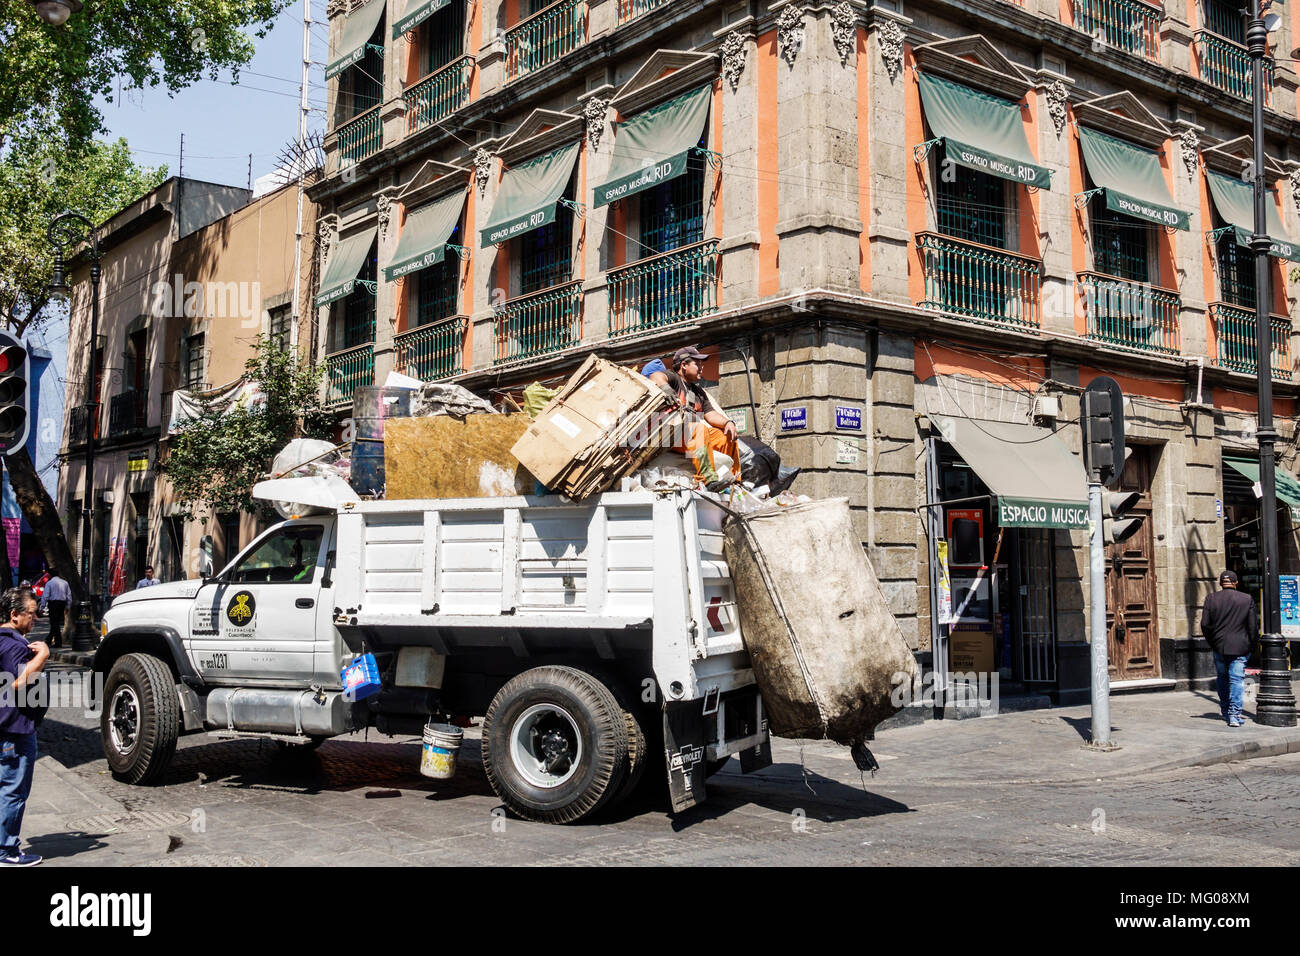 Mexico, mexicain, hispanique, centre historique, Calle Bolivar, collecte des déchets, camion à ordures, homme hommes, travailleur sanitaire, virage M Banque D'Images